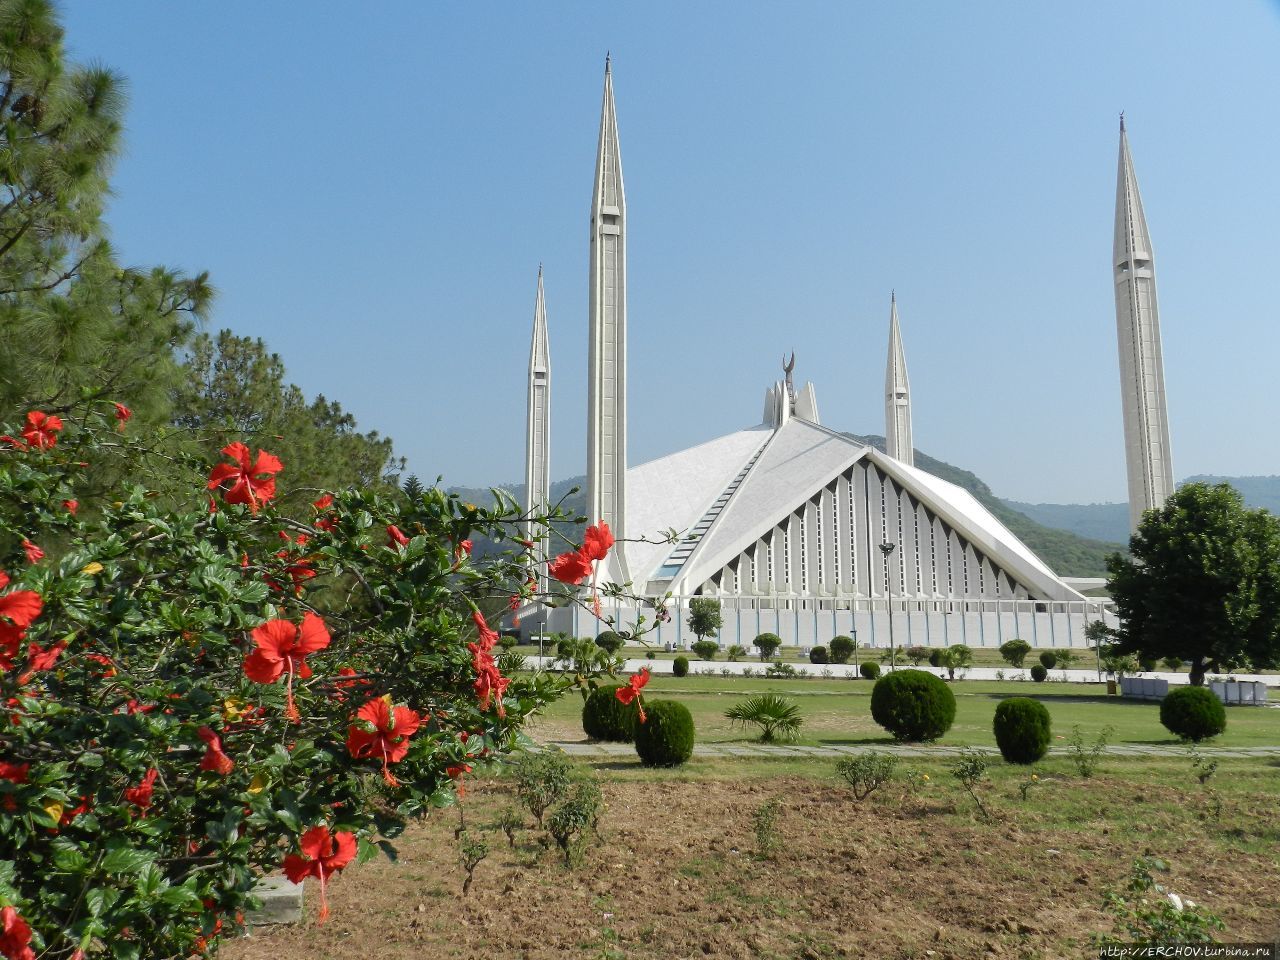 Пакистан. Ч — 12. Ядерная держава Пакистан Исламабад, Пакистан